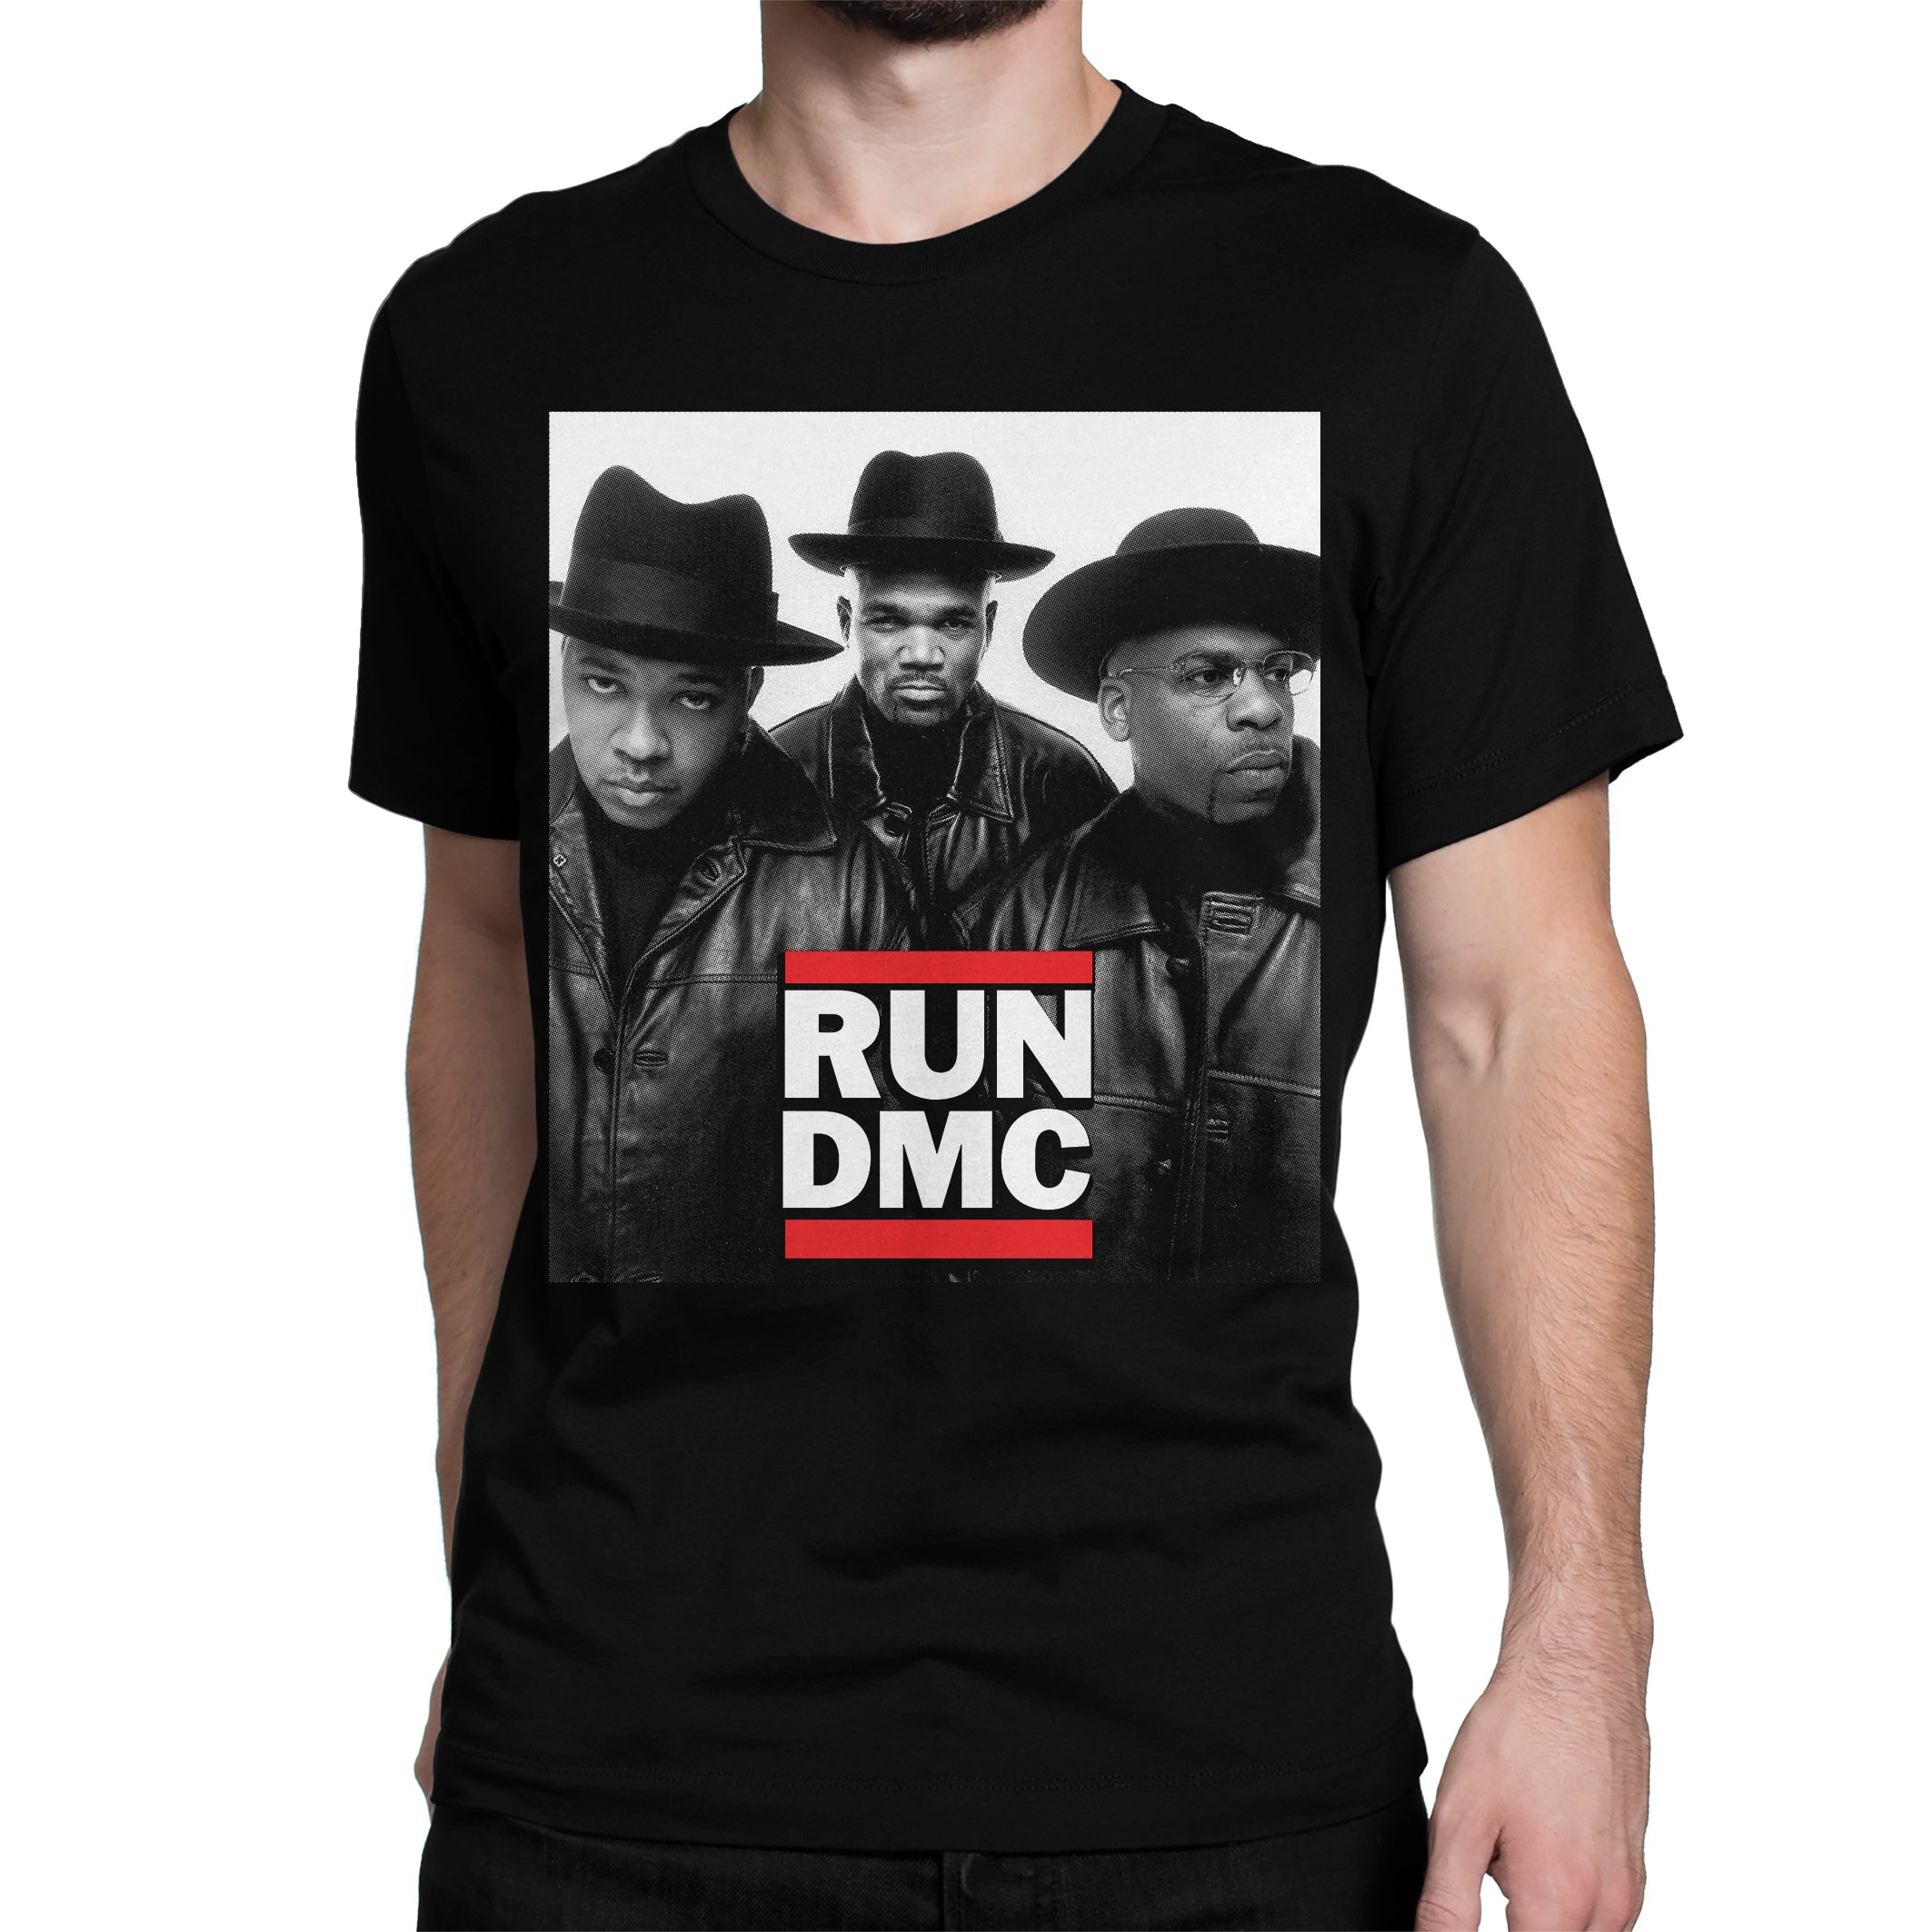 run dmc t shirt india